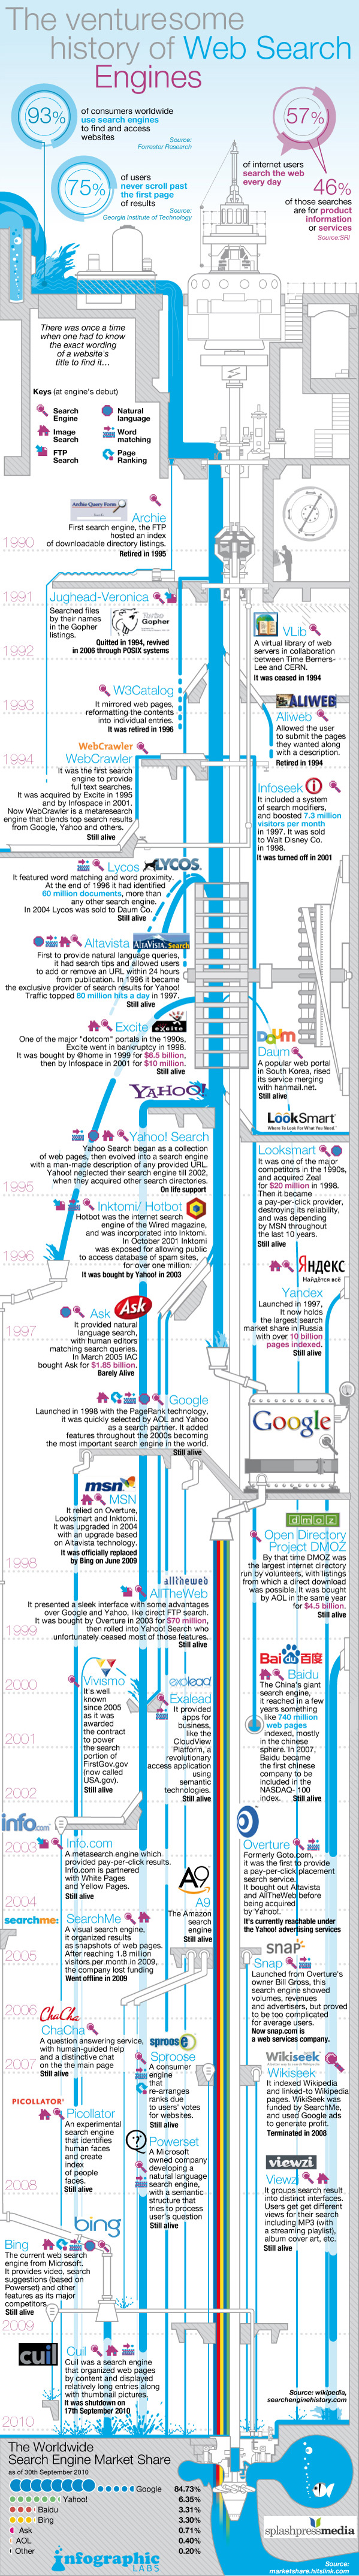 La emprendedora historia de los motores de búsqueda en la Web.[Infografía] 2